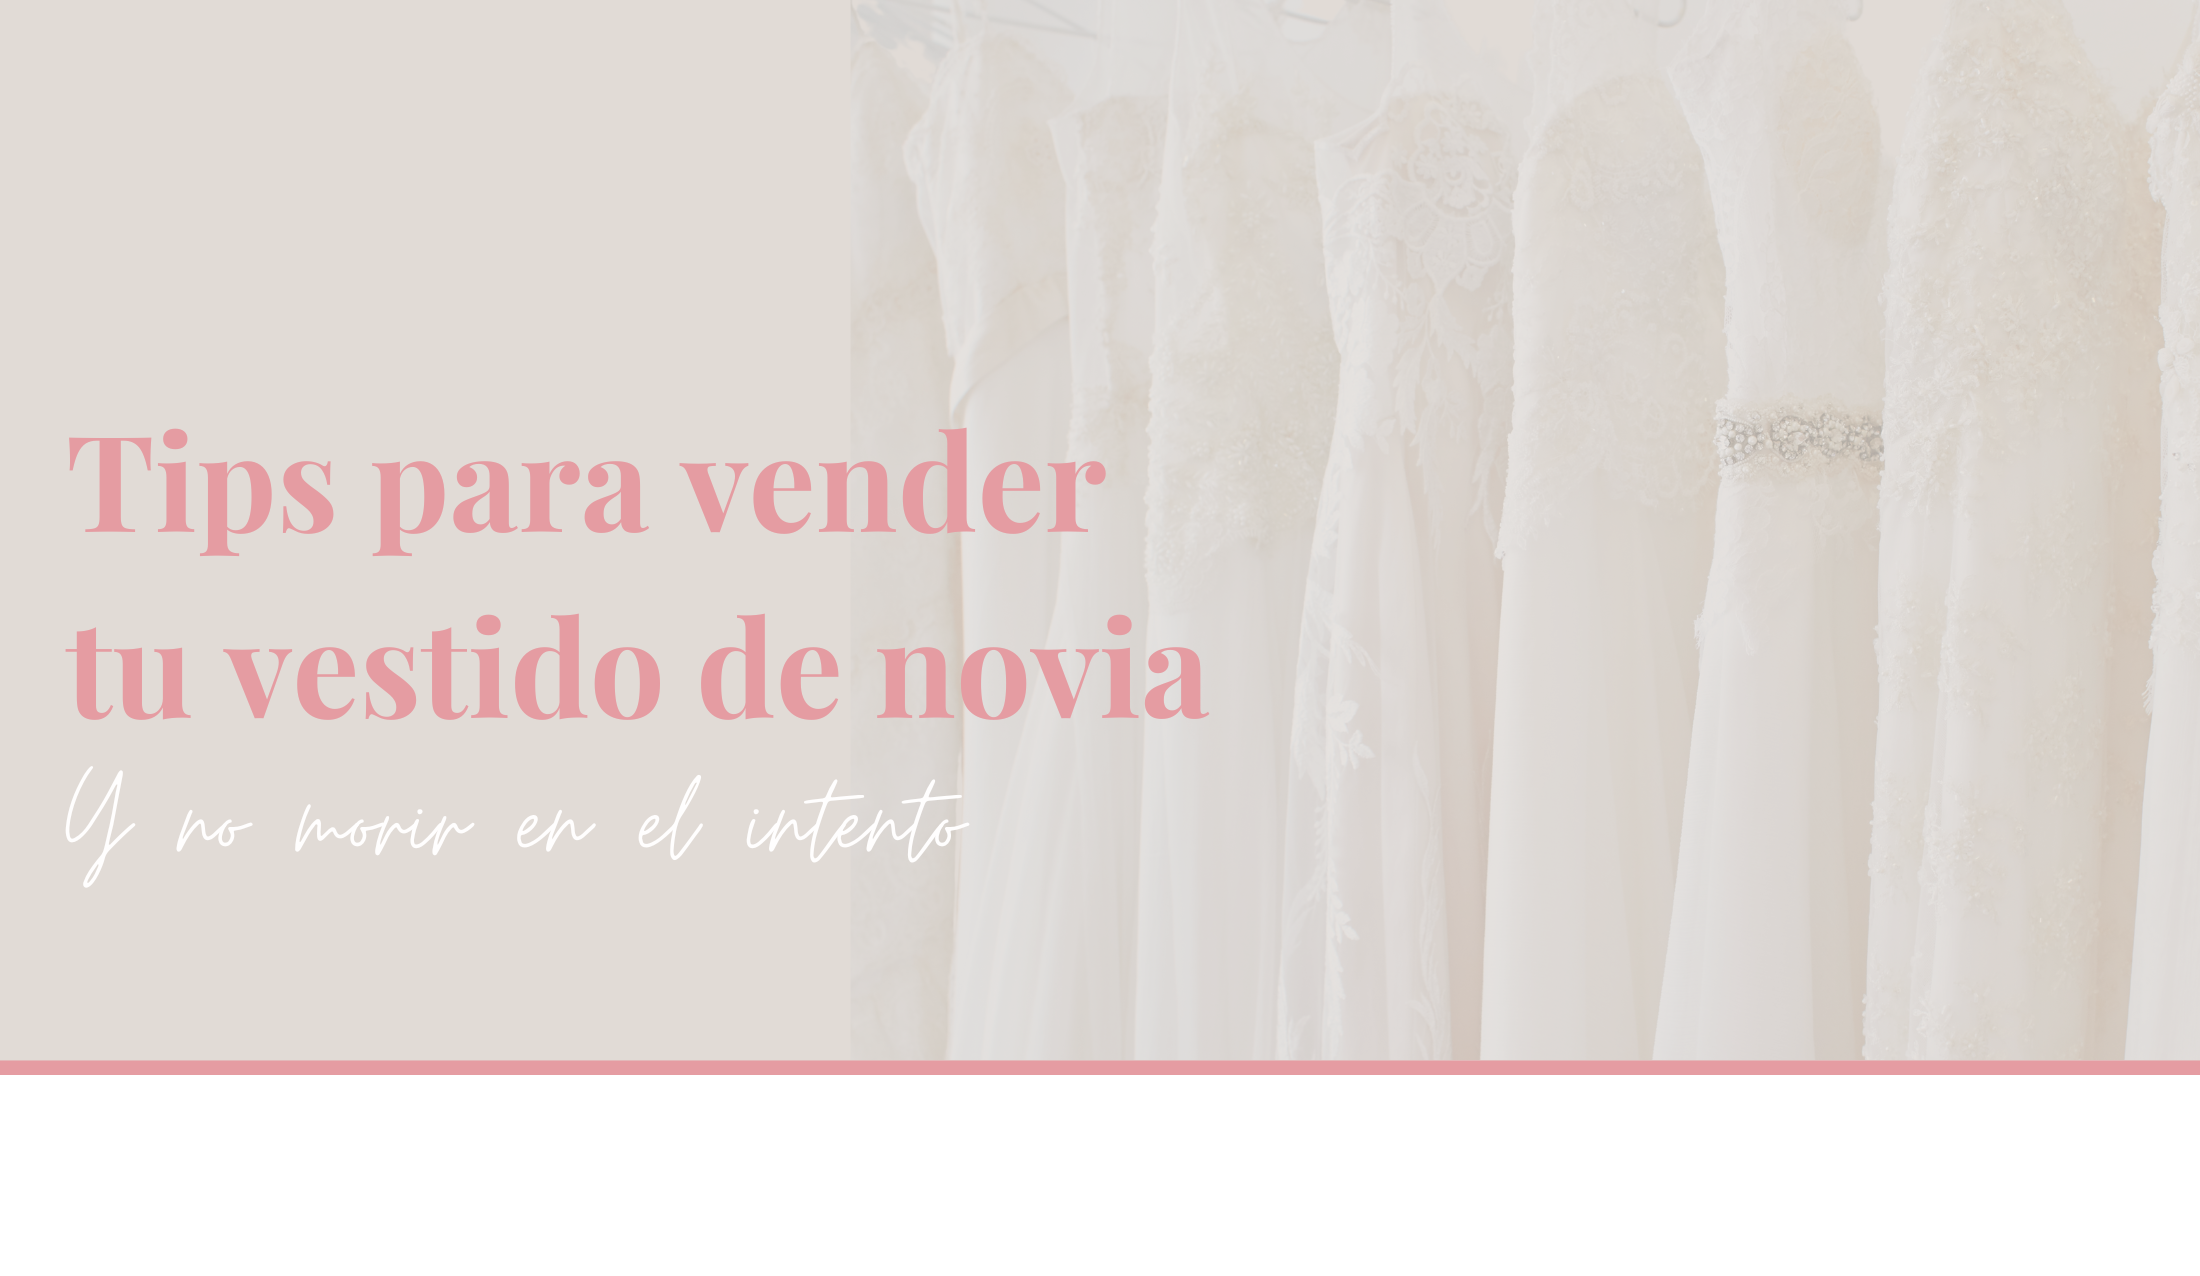 Tips para vender tu vestido de novia usado